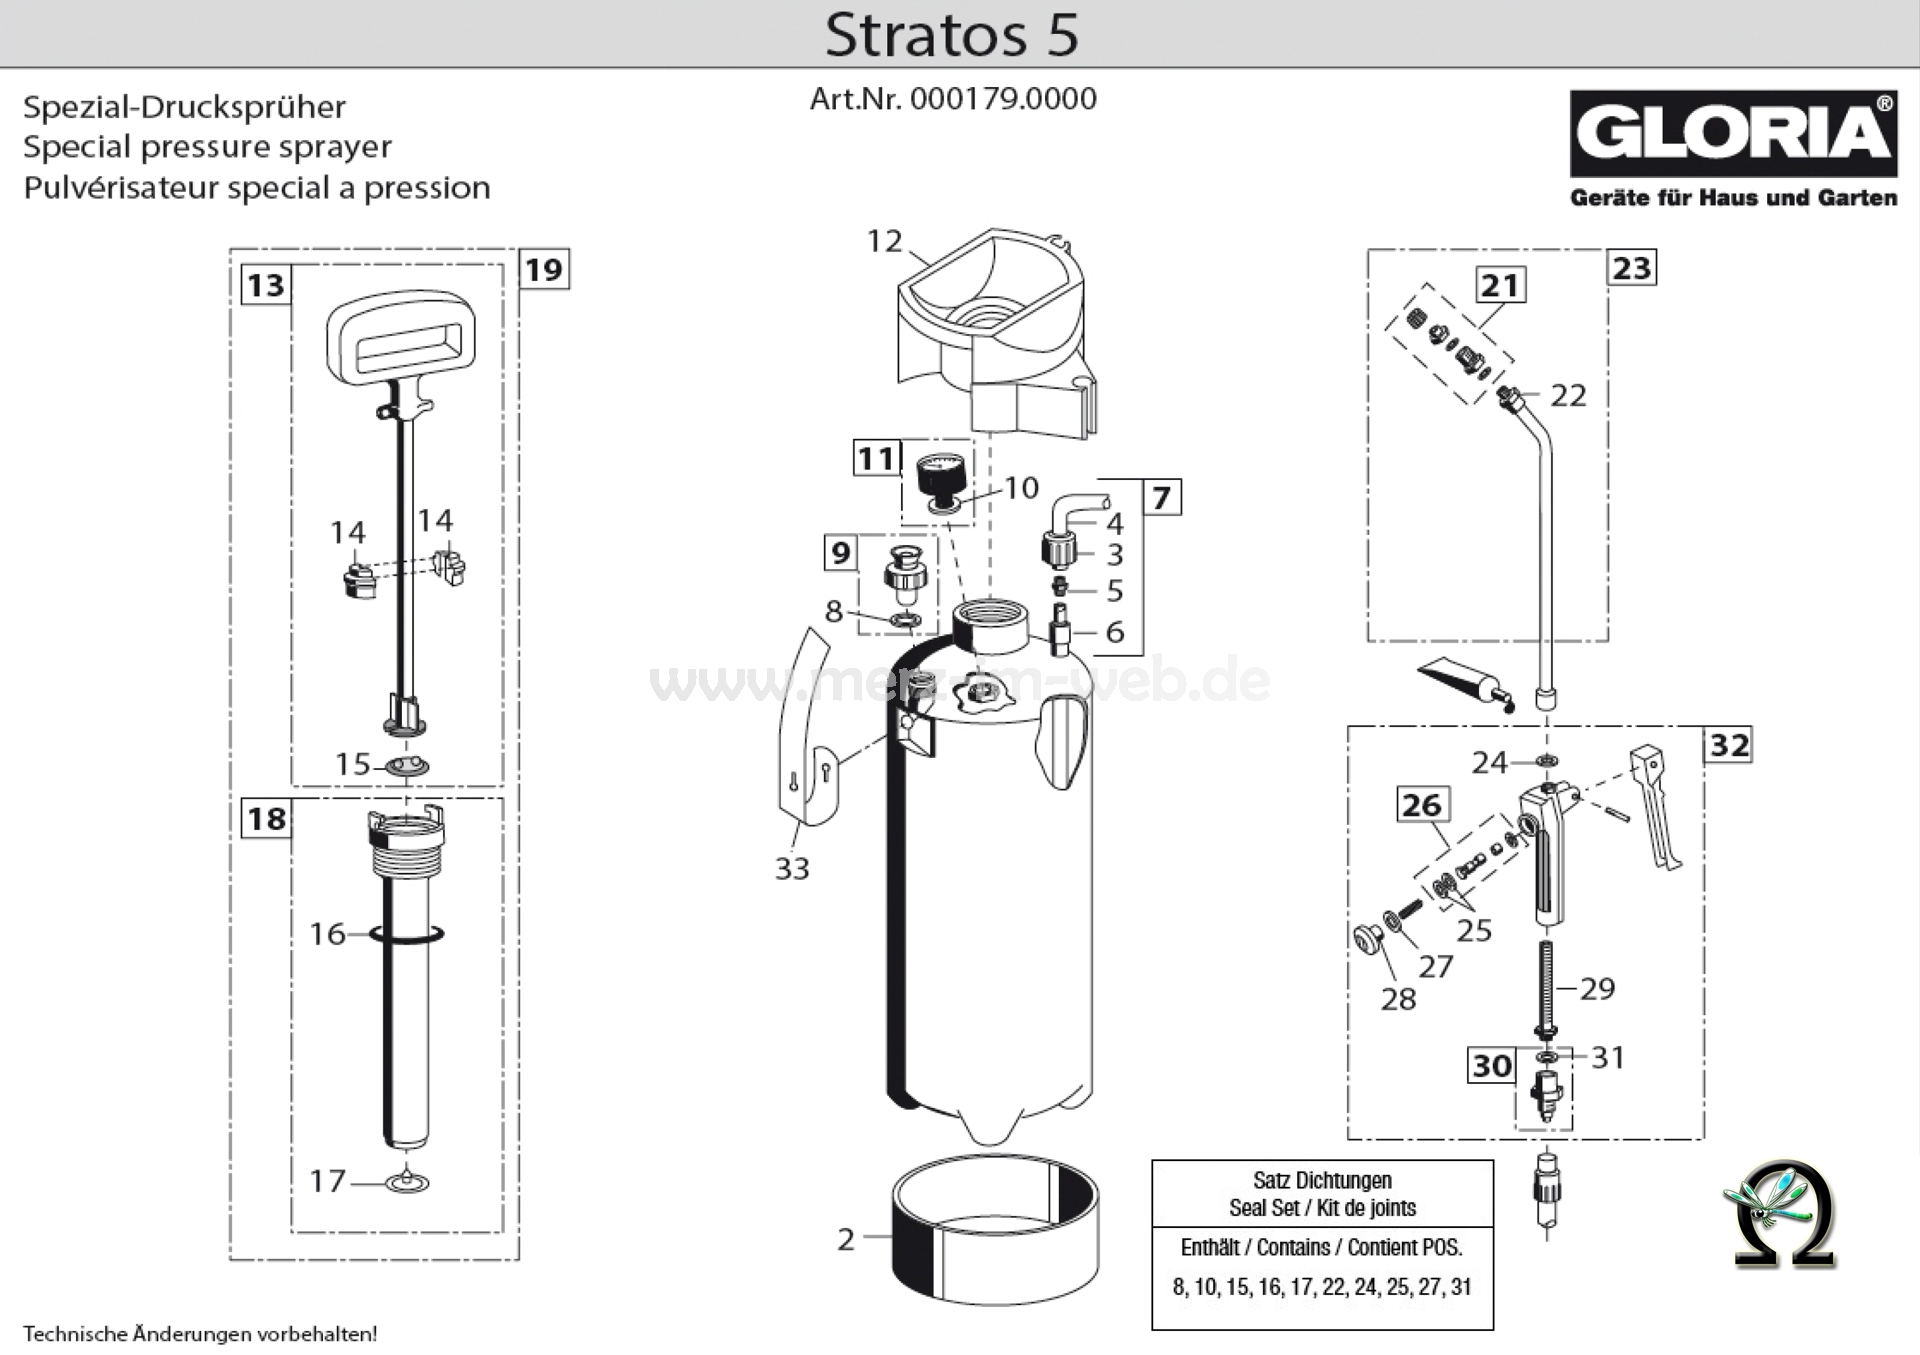 Spezial-Drucksprühgerät Gloria Airstar Stratos 5, Zeichnung der Einzelteile